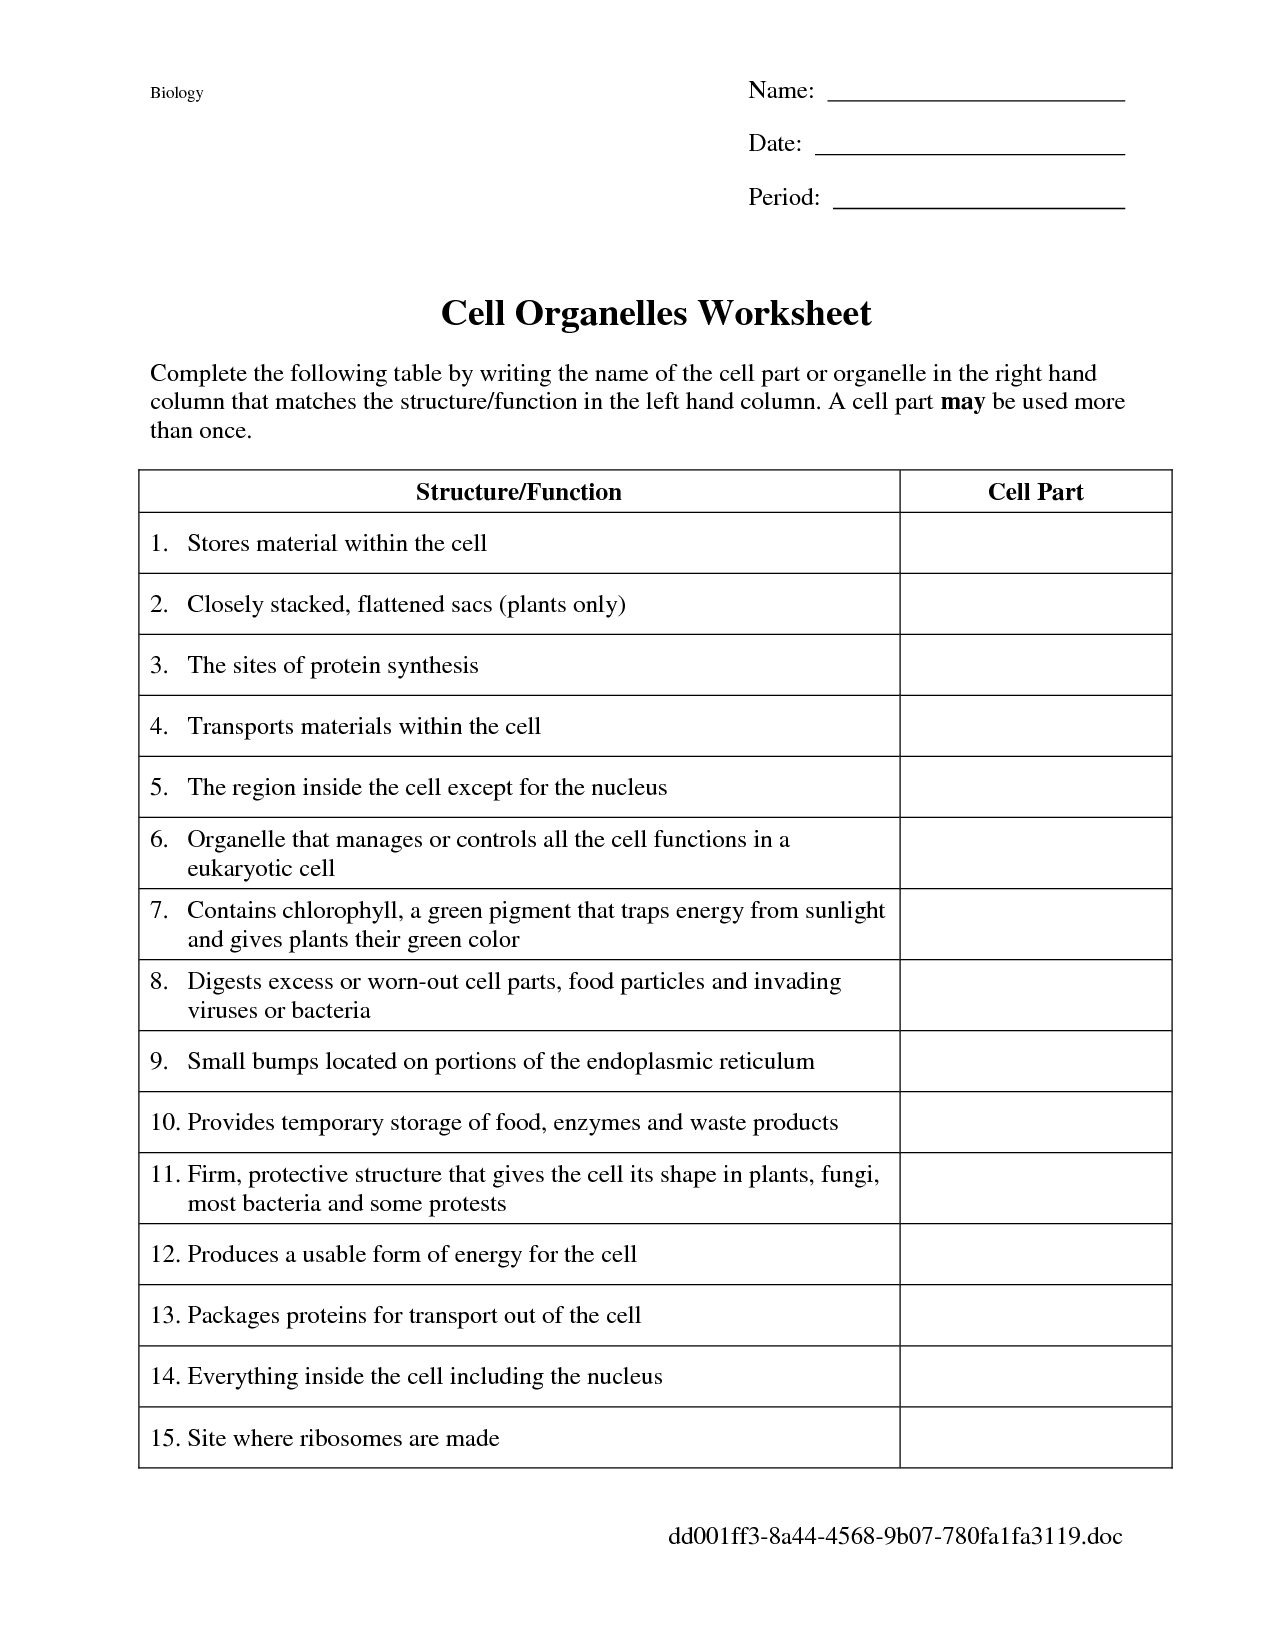 18-best-images-of-biology-cells-worksheets-answer-keys-cell-organelles-worksheet-answer-key